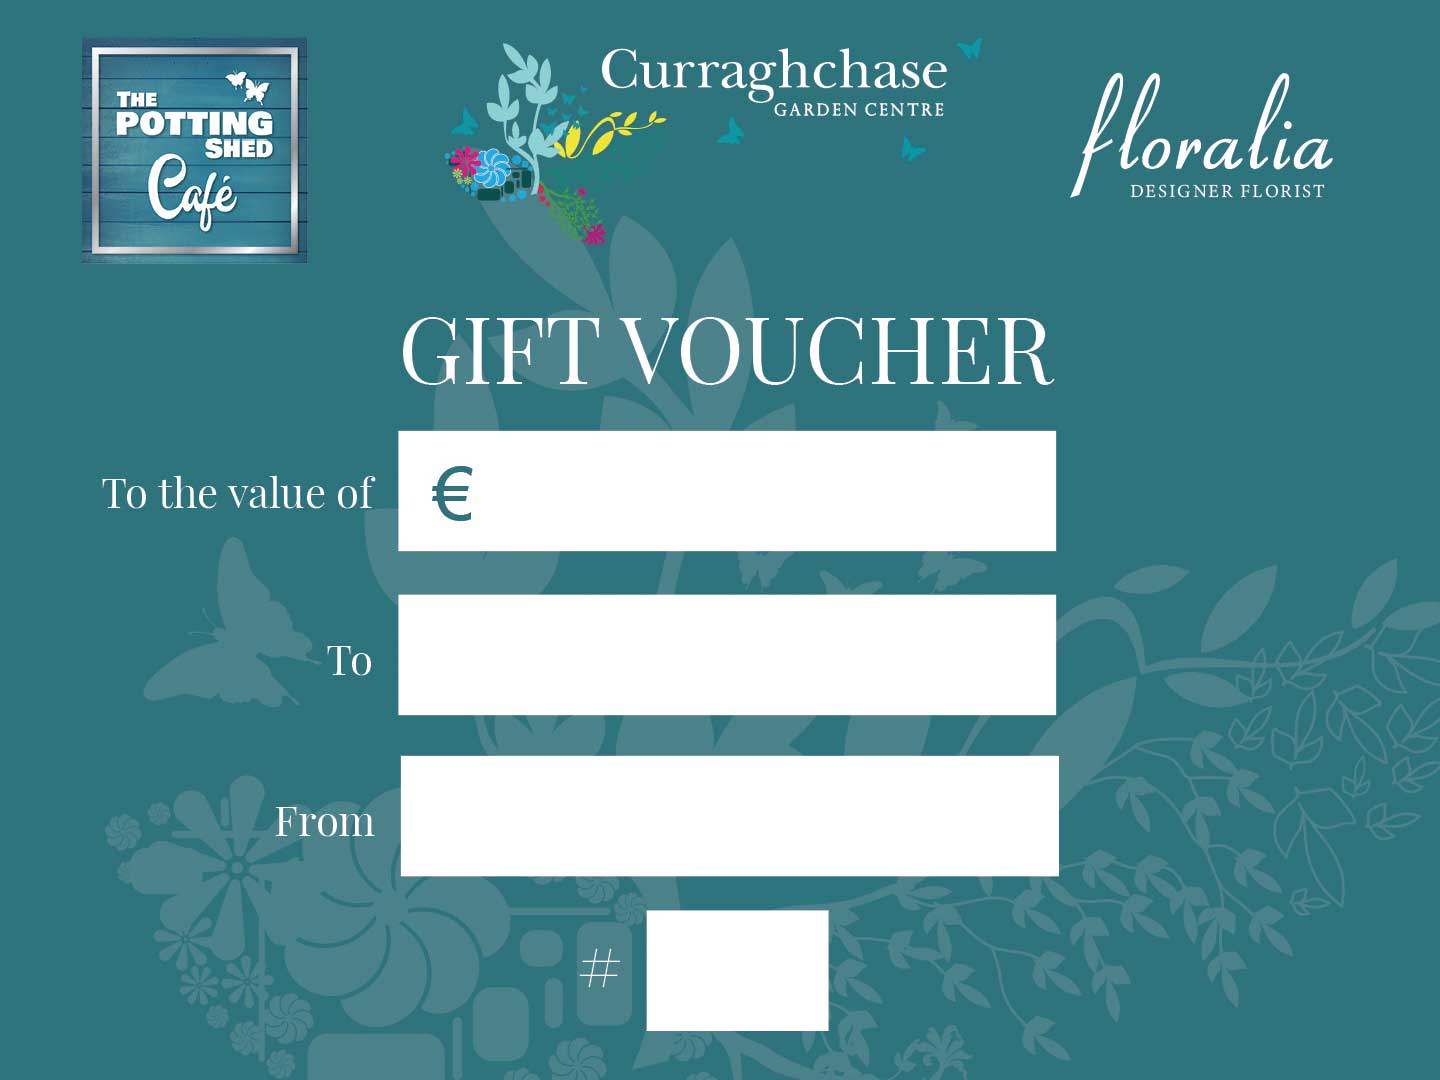 Curraghchase Garden Centre | Homepage | Gift Voucher